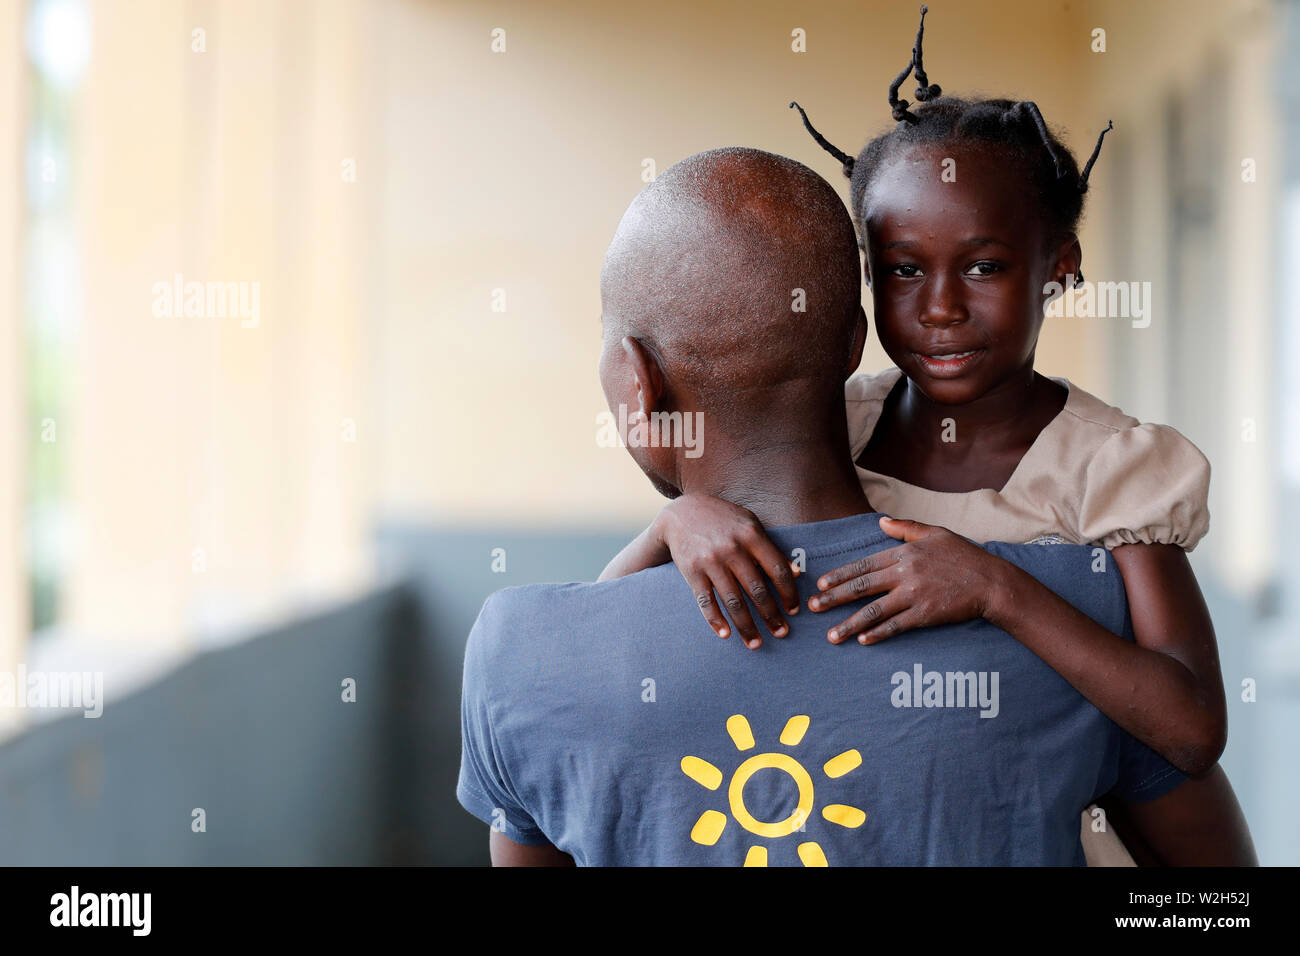 La escuela primaria de África. Niño patrocinado por la ONG francesa : la Chaine de l'Espoir. ( Cadena de Esperanza ). Lome. Togo. Foto de stock